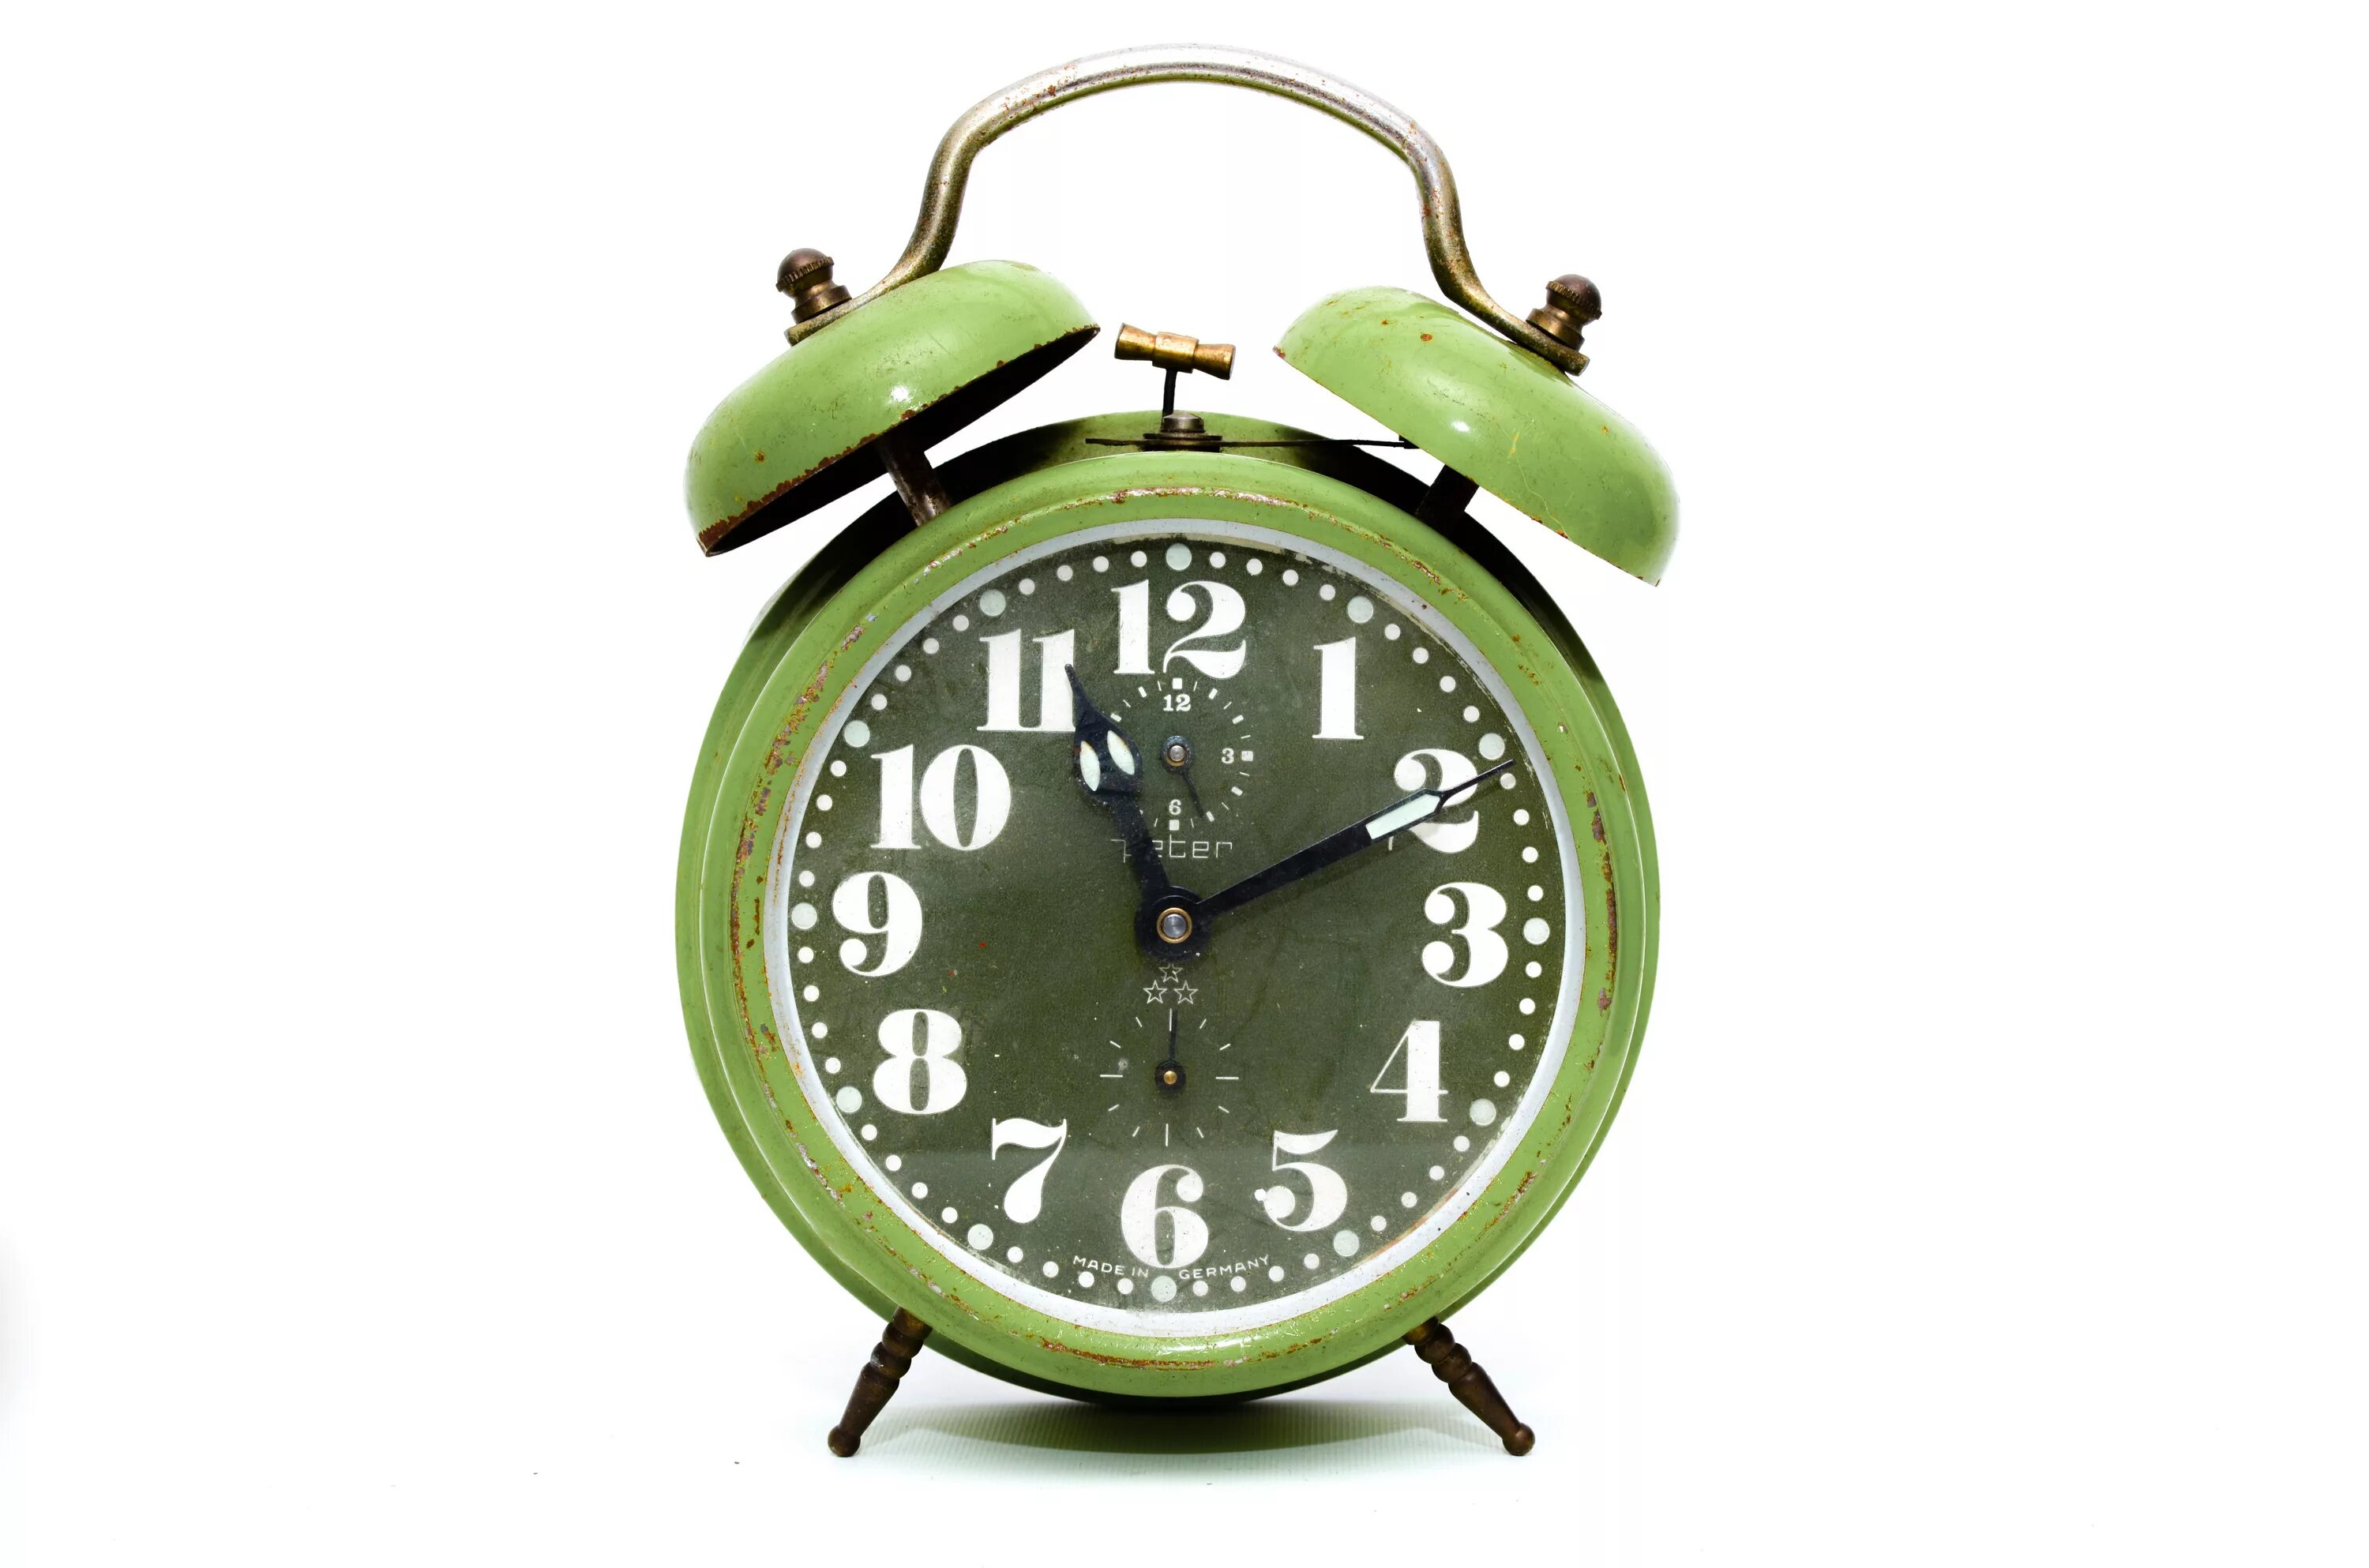 Будильник на зеленом фоне. Будильник Аларм клок. Старые часы будильник. Часы настольные зеленые. Винтажный будильник.